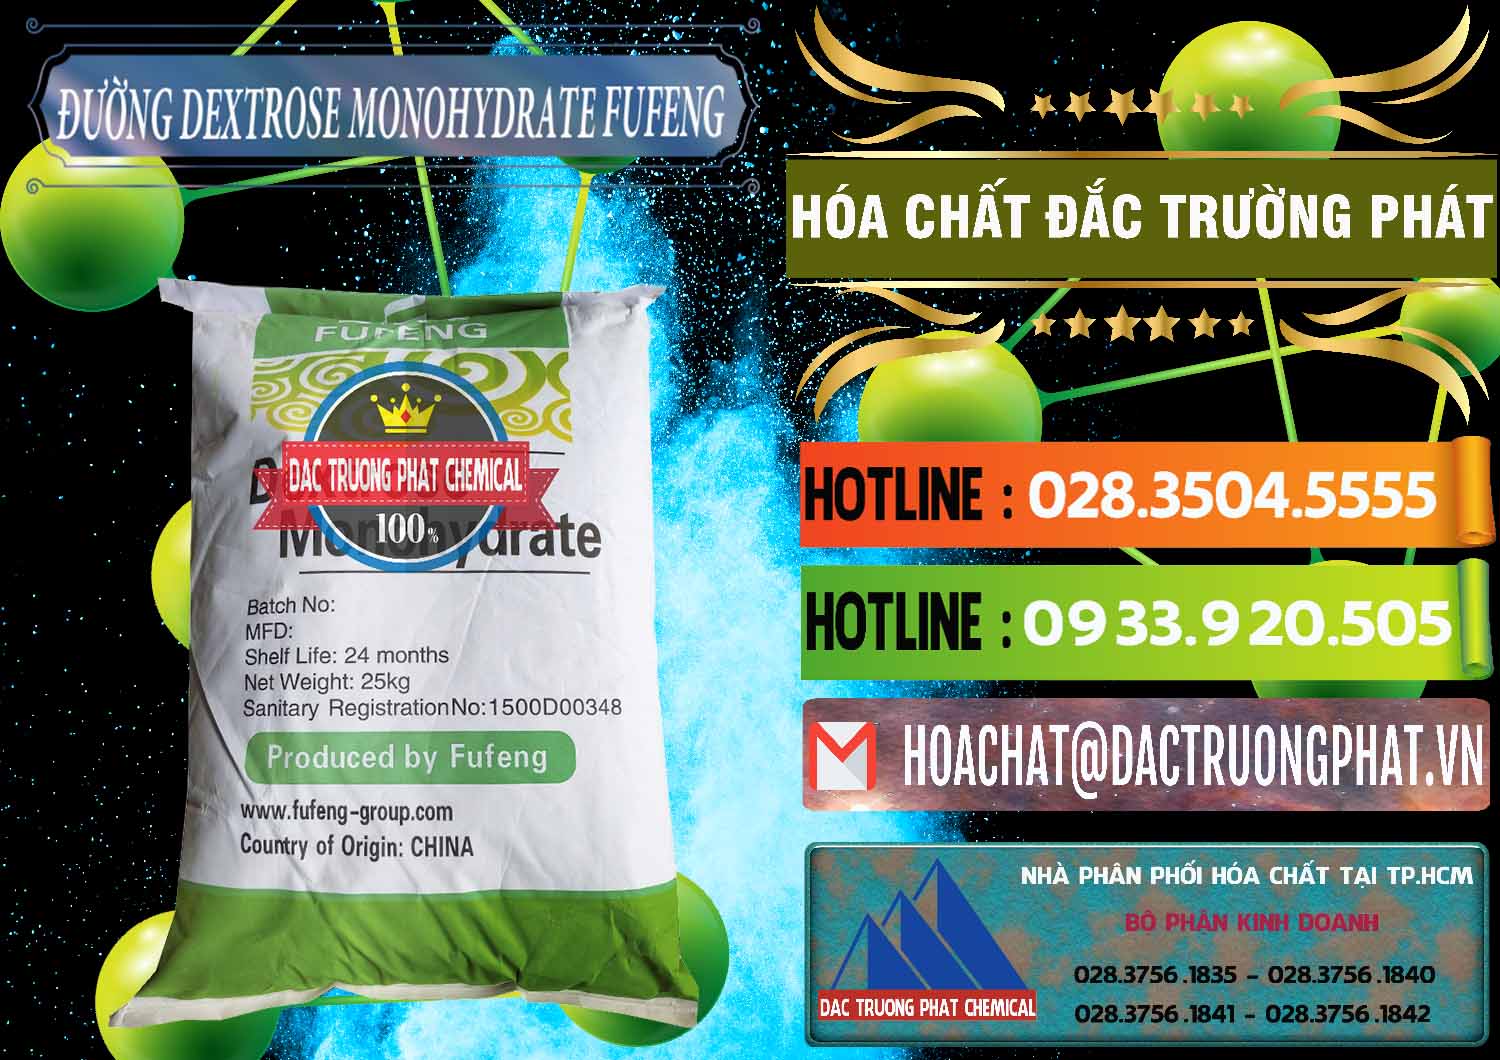 Nơi chuyên bán - cung cấp Đường Dextrose Monohydrate Food Grade Fufeng Trung Quốc China - 0223 - Nhà nhập khẩu và cung cấp hóa chất tại TP.HCM - cungcaphoachat.com.vn